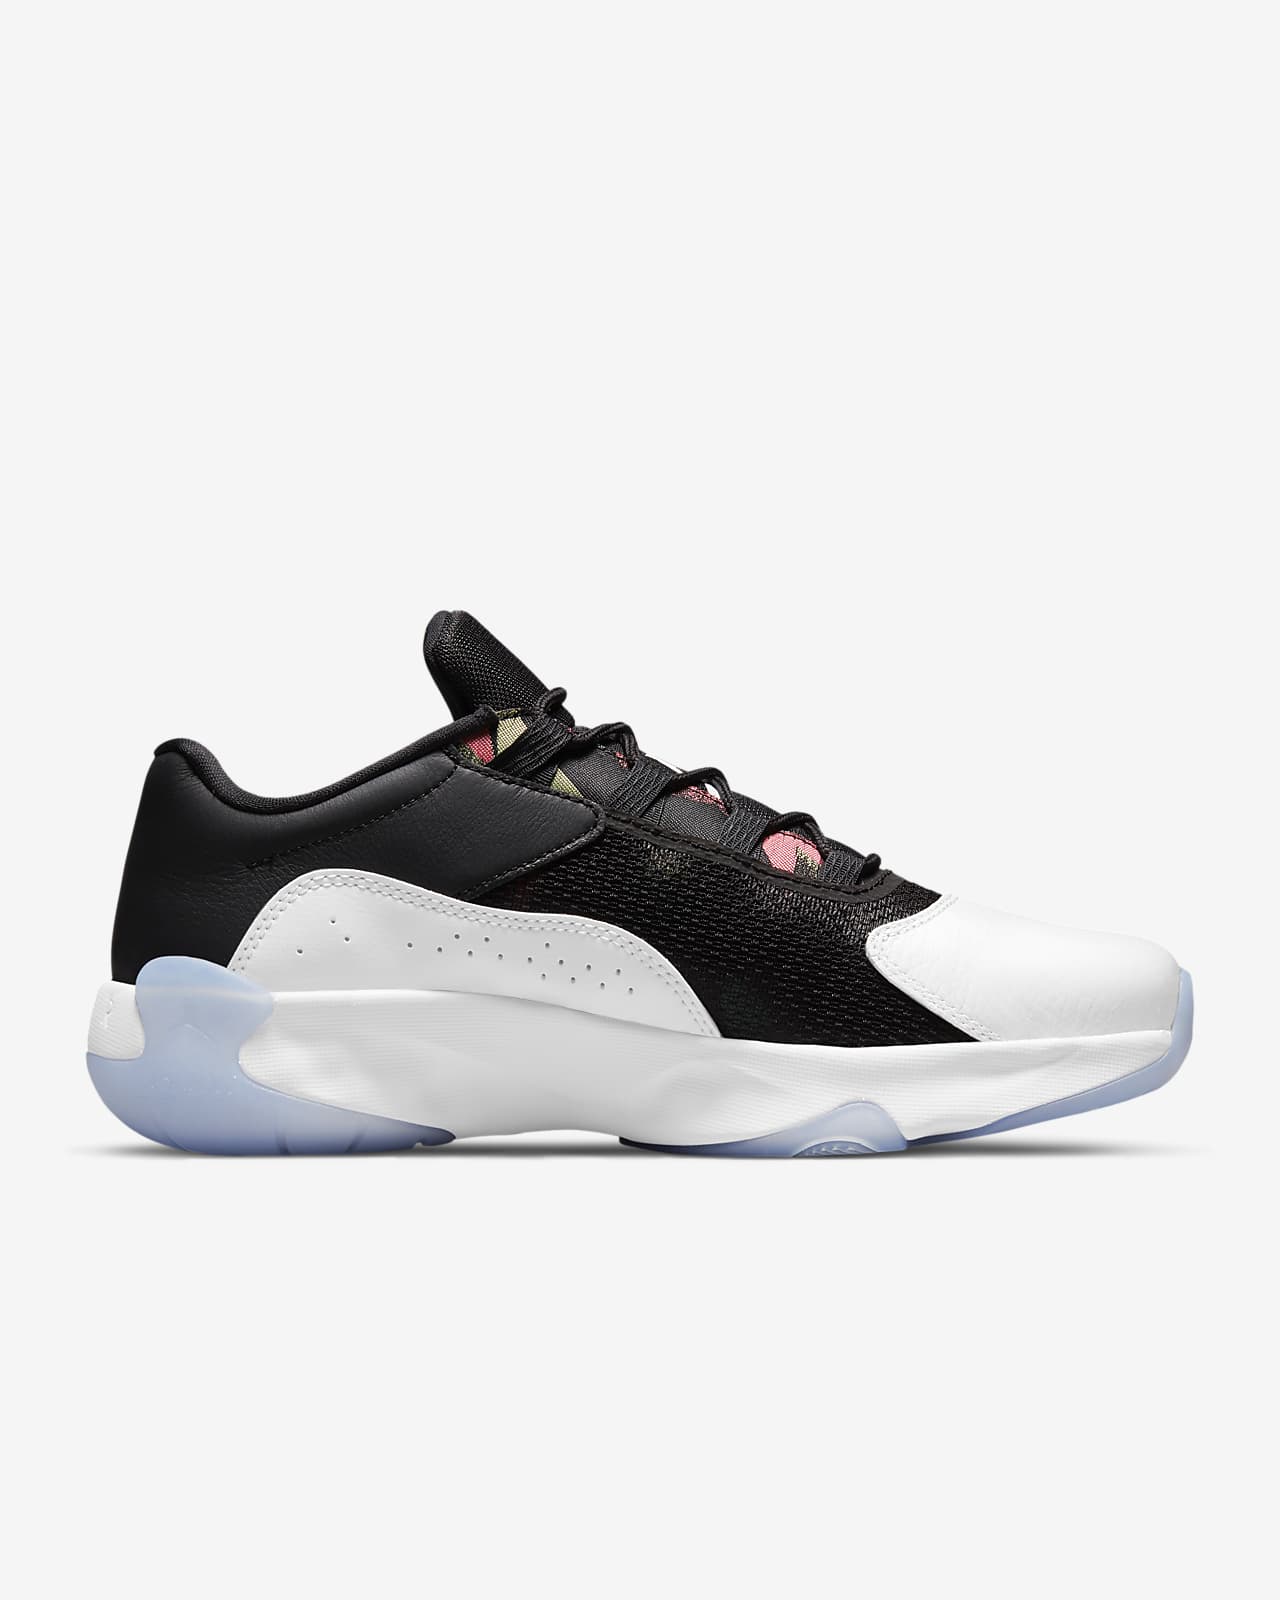 Air Jordan 11 CMFT Low Men's Shoes. Nike LU